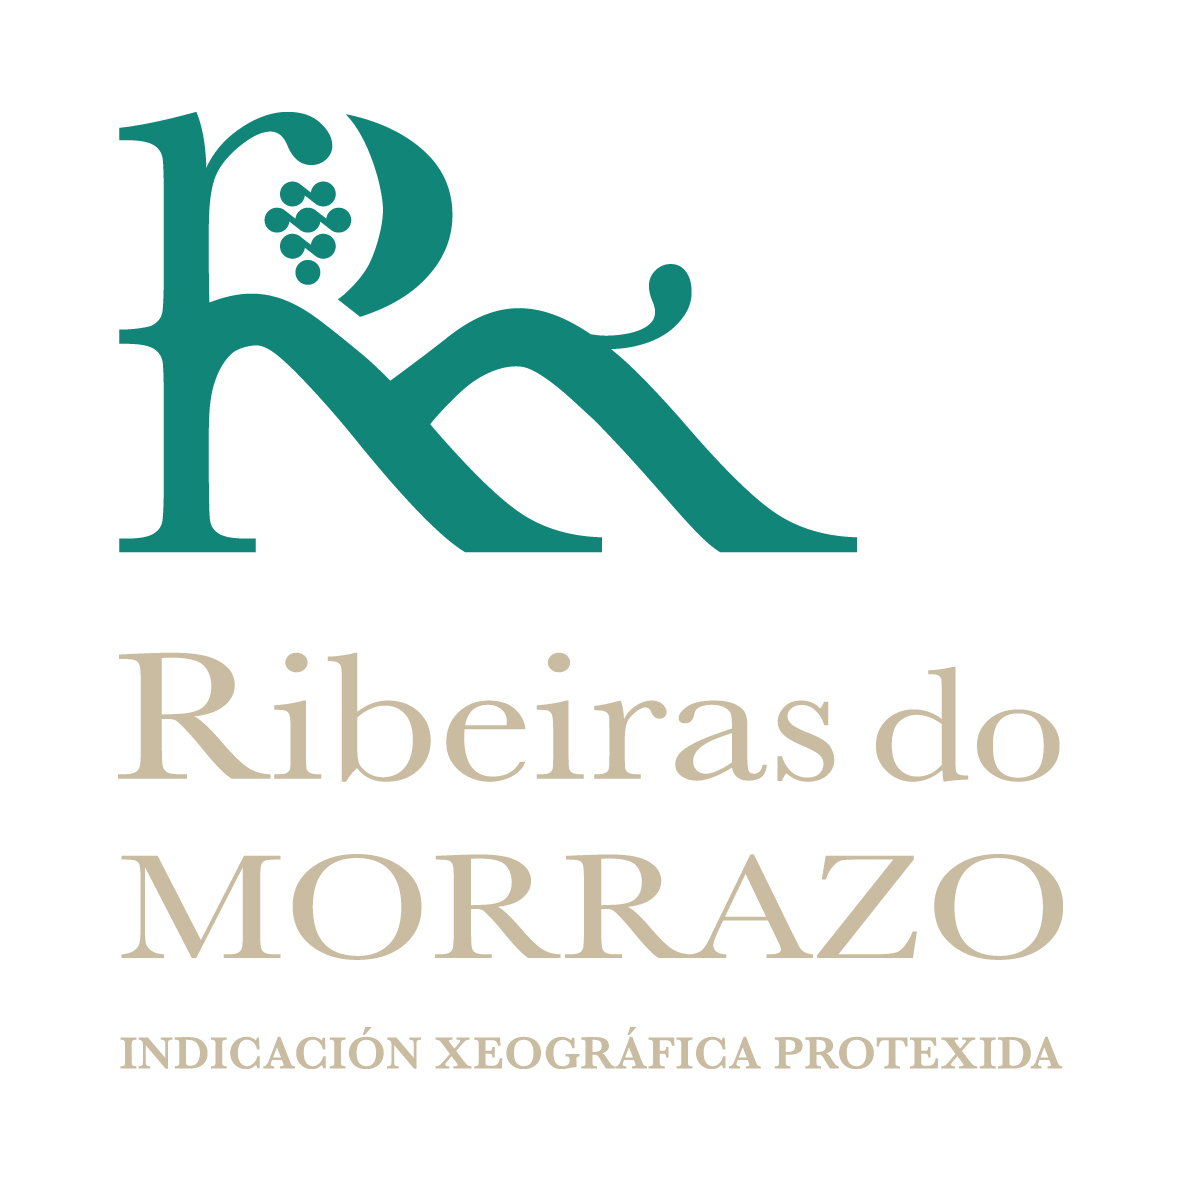 La IGP de vinos Ribeiras do Morrazo ya cuenta con la aprobación de la Comisión Europea